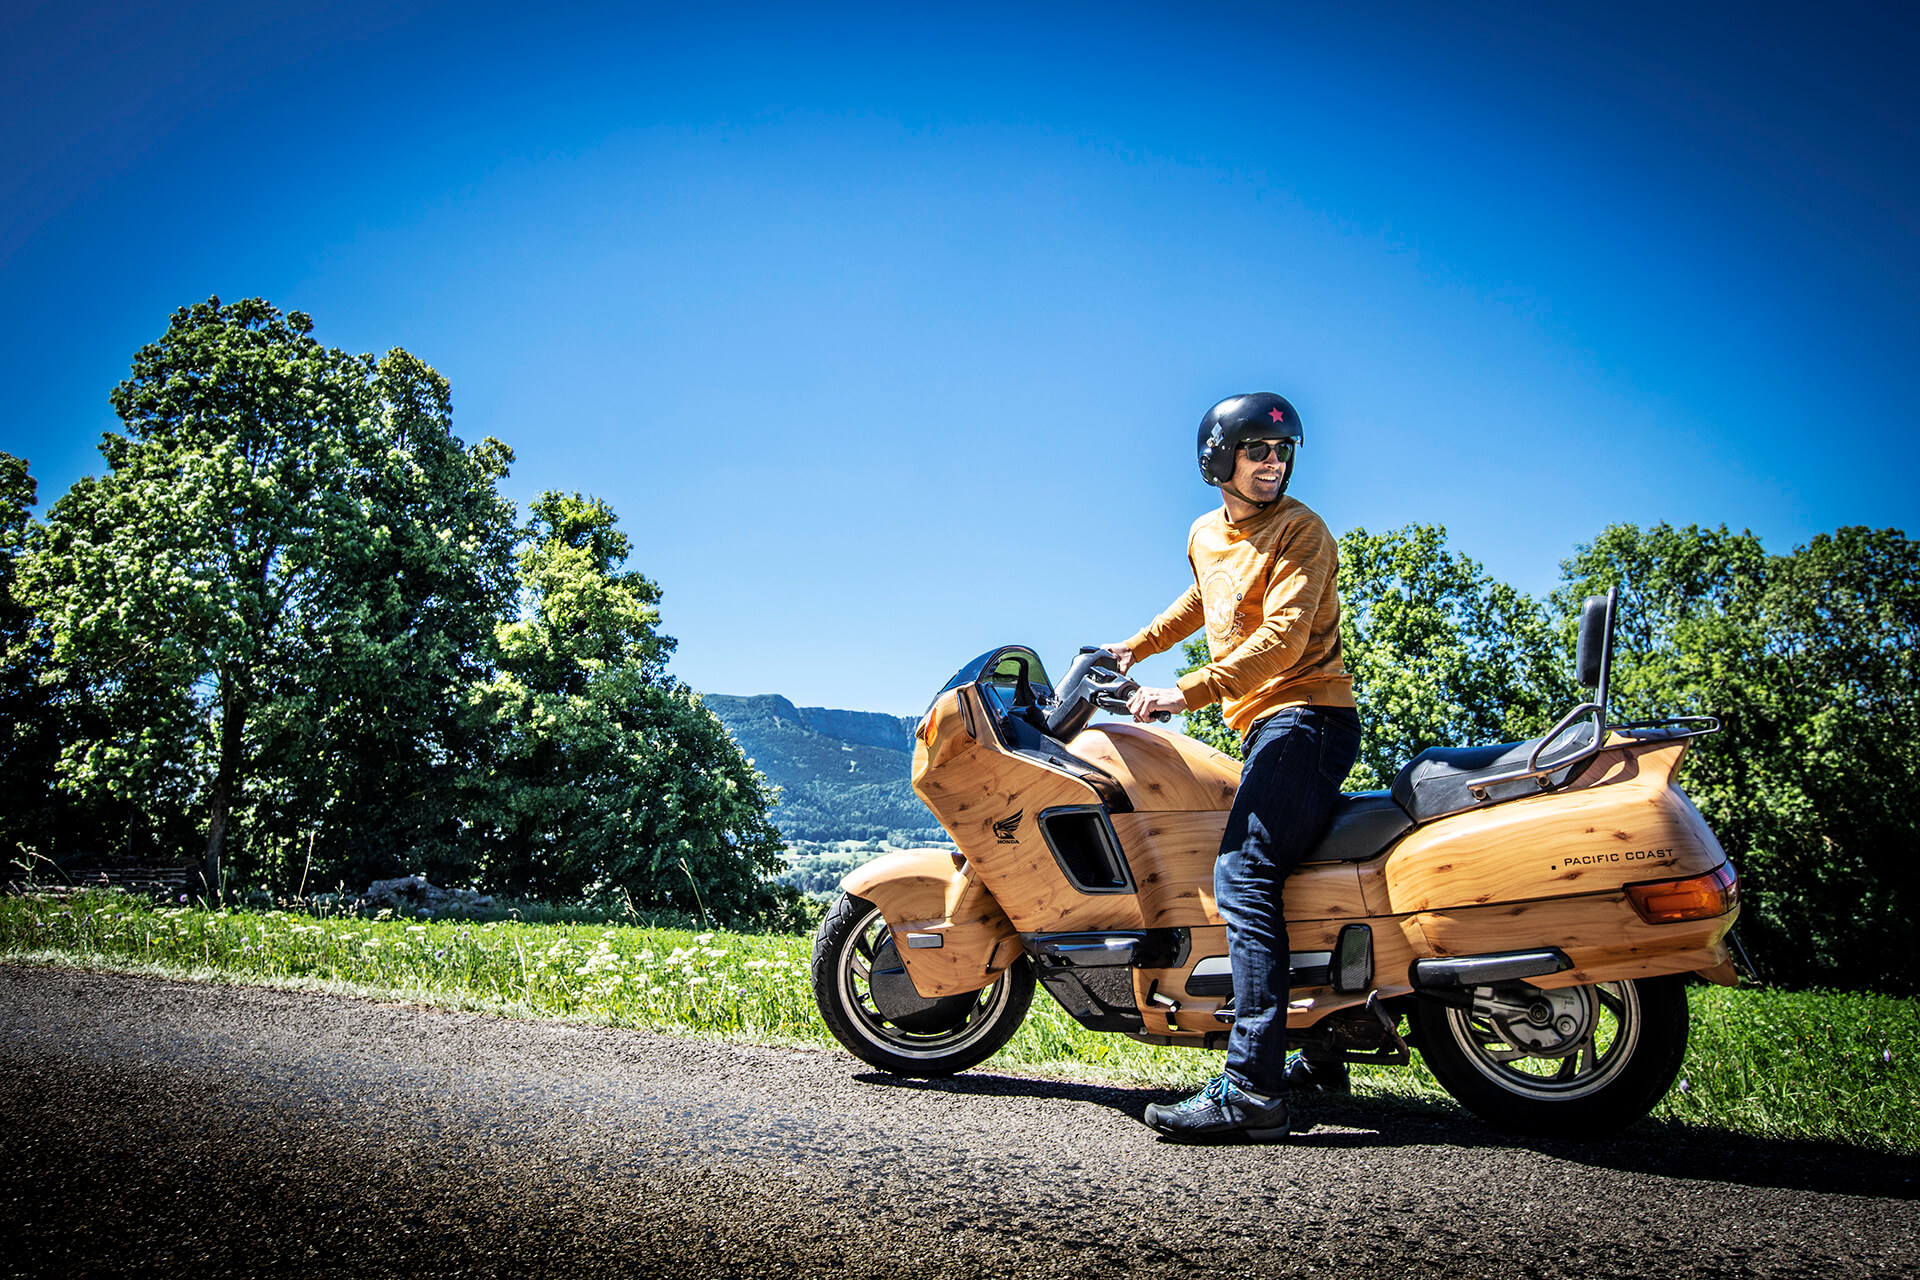 Moto Honda full wood